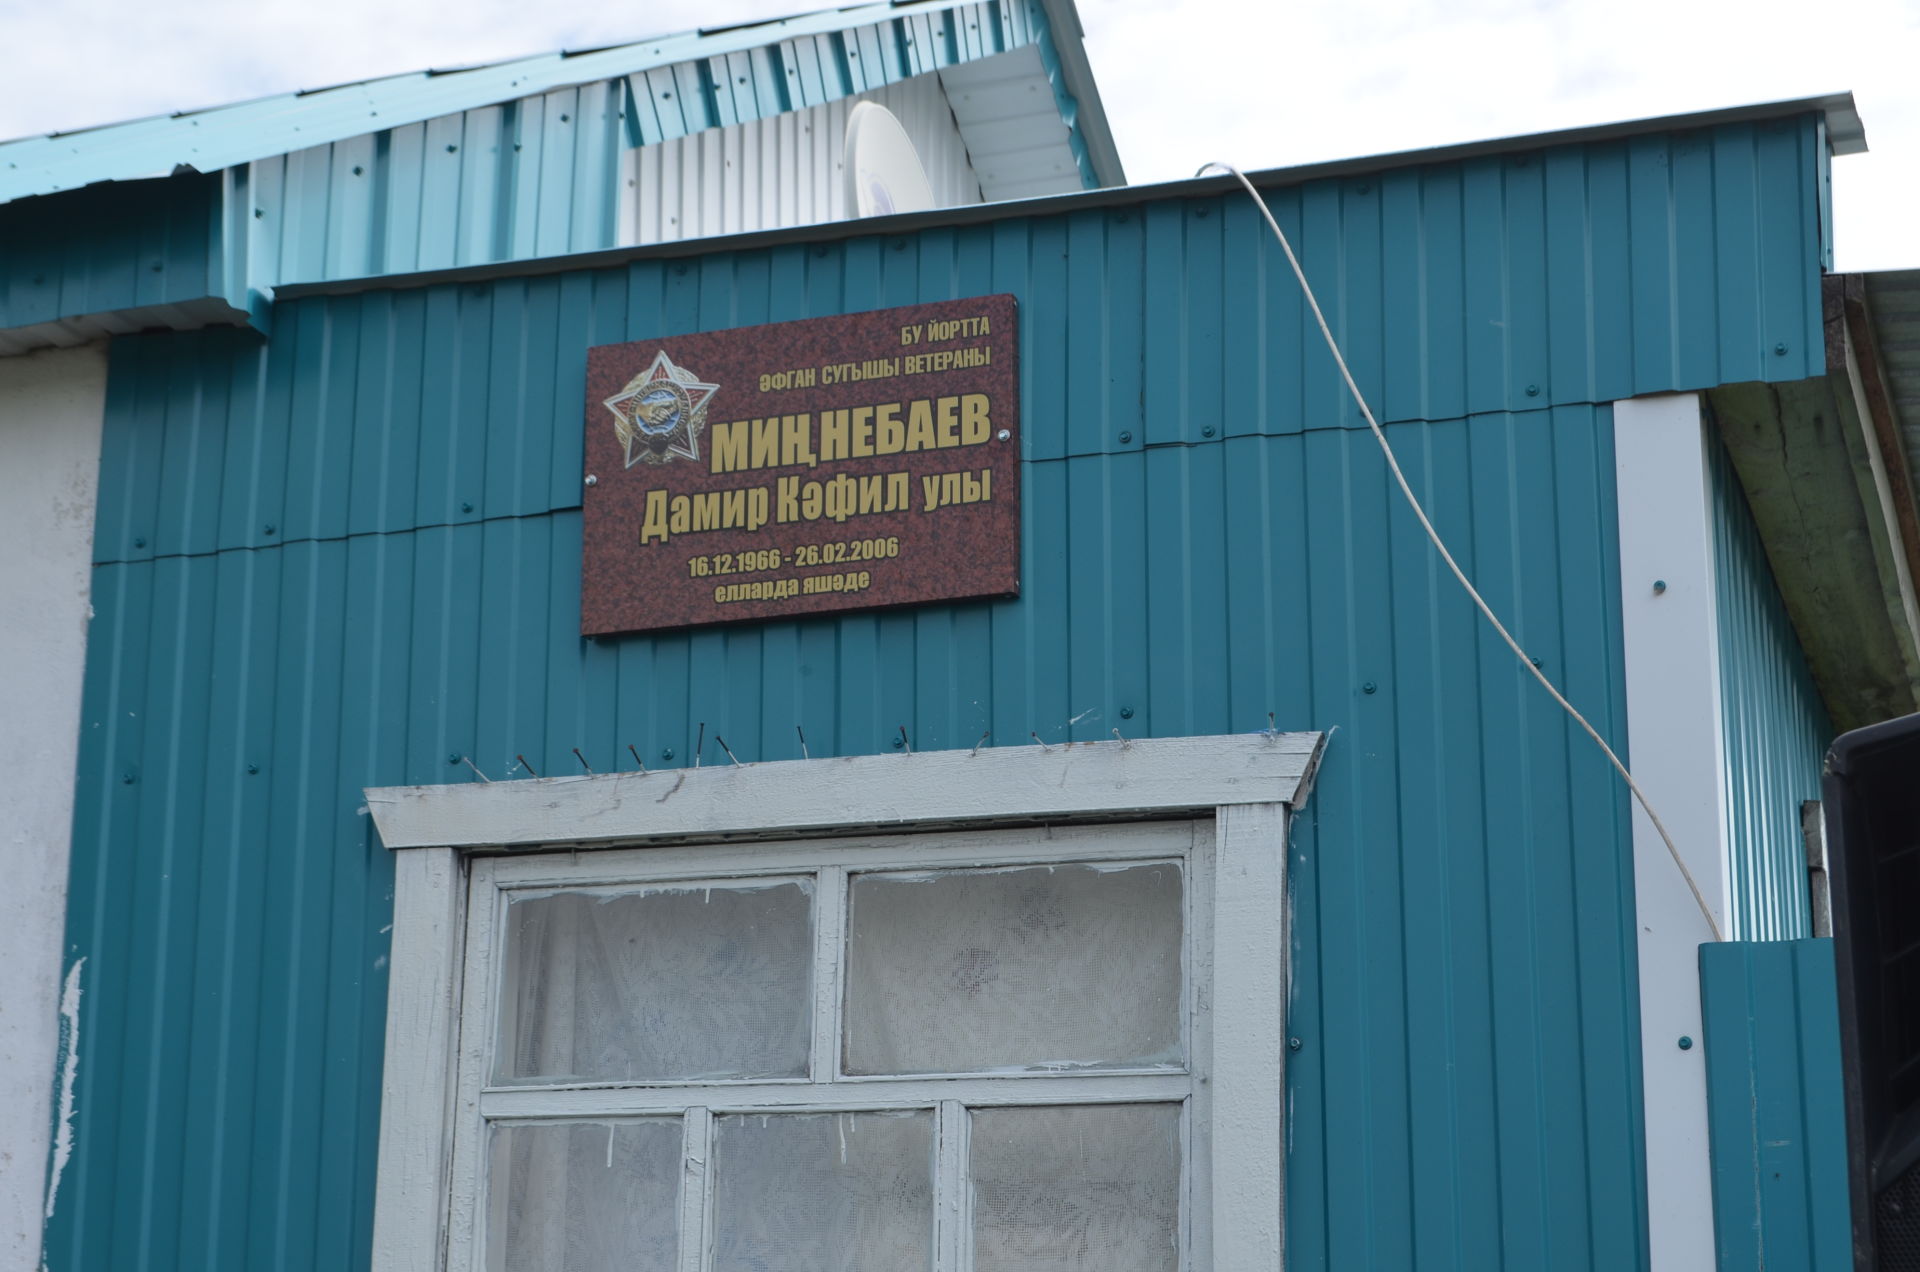 Борнаш авылында яшәгән әфганчы Дамир Миңнебаев йорт капкасына истәлек тактасы урнаштырылды